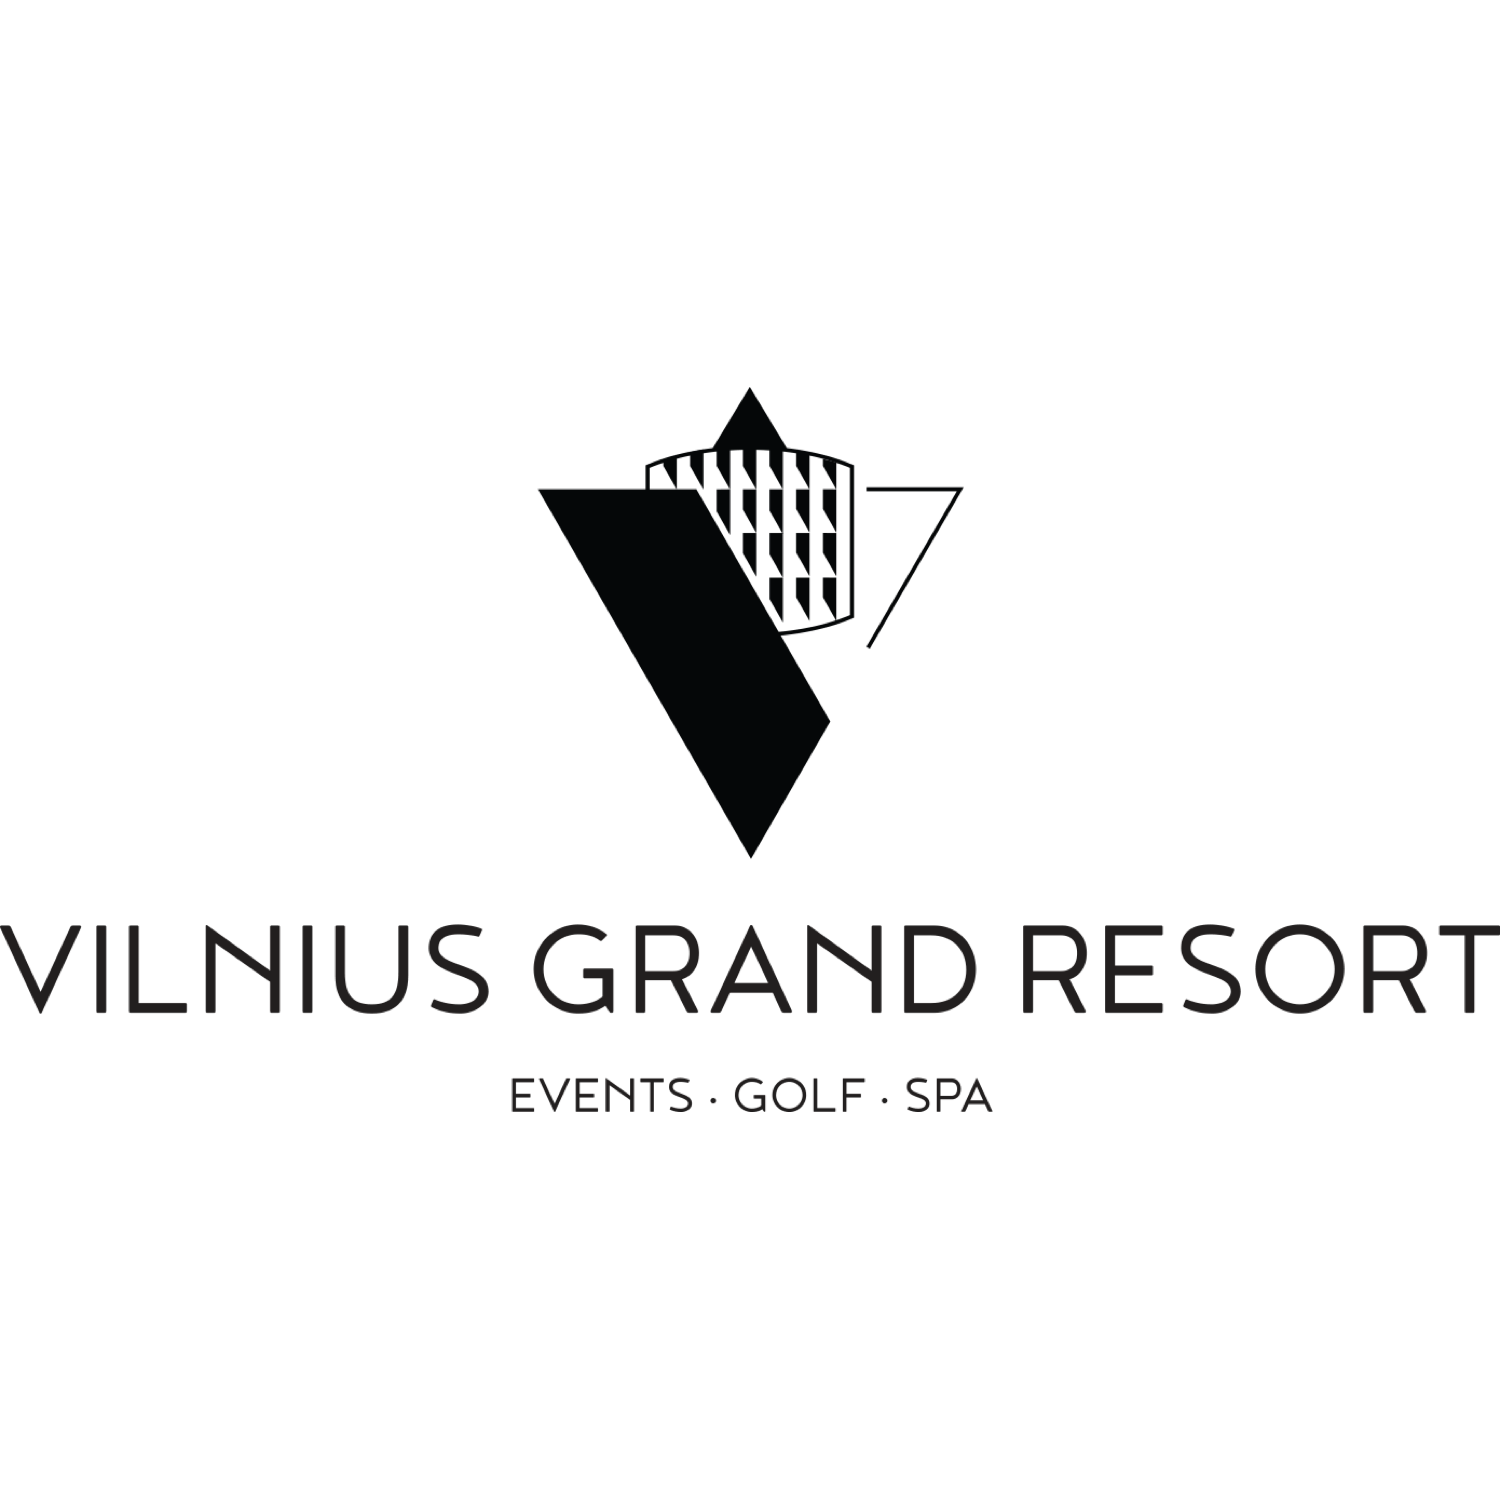 Vilnius Grand Resort - Lithuania